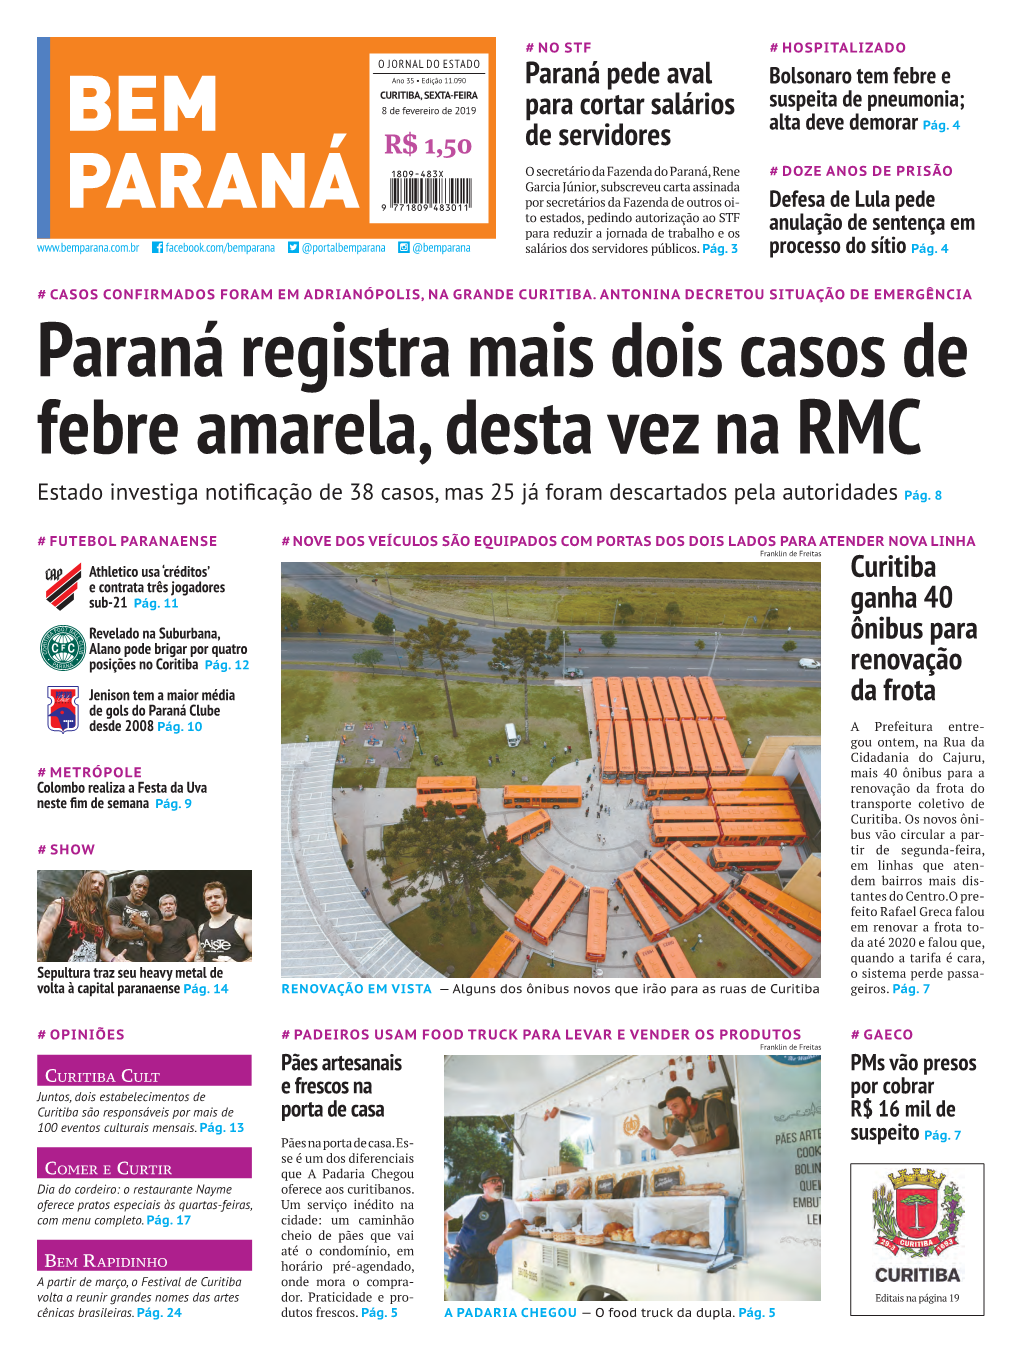 Paraná Registra Mais Dois Casos De Febre Amarela, Desta Vez Na RMC